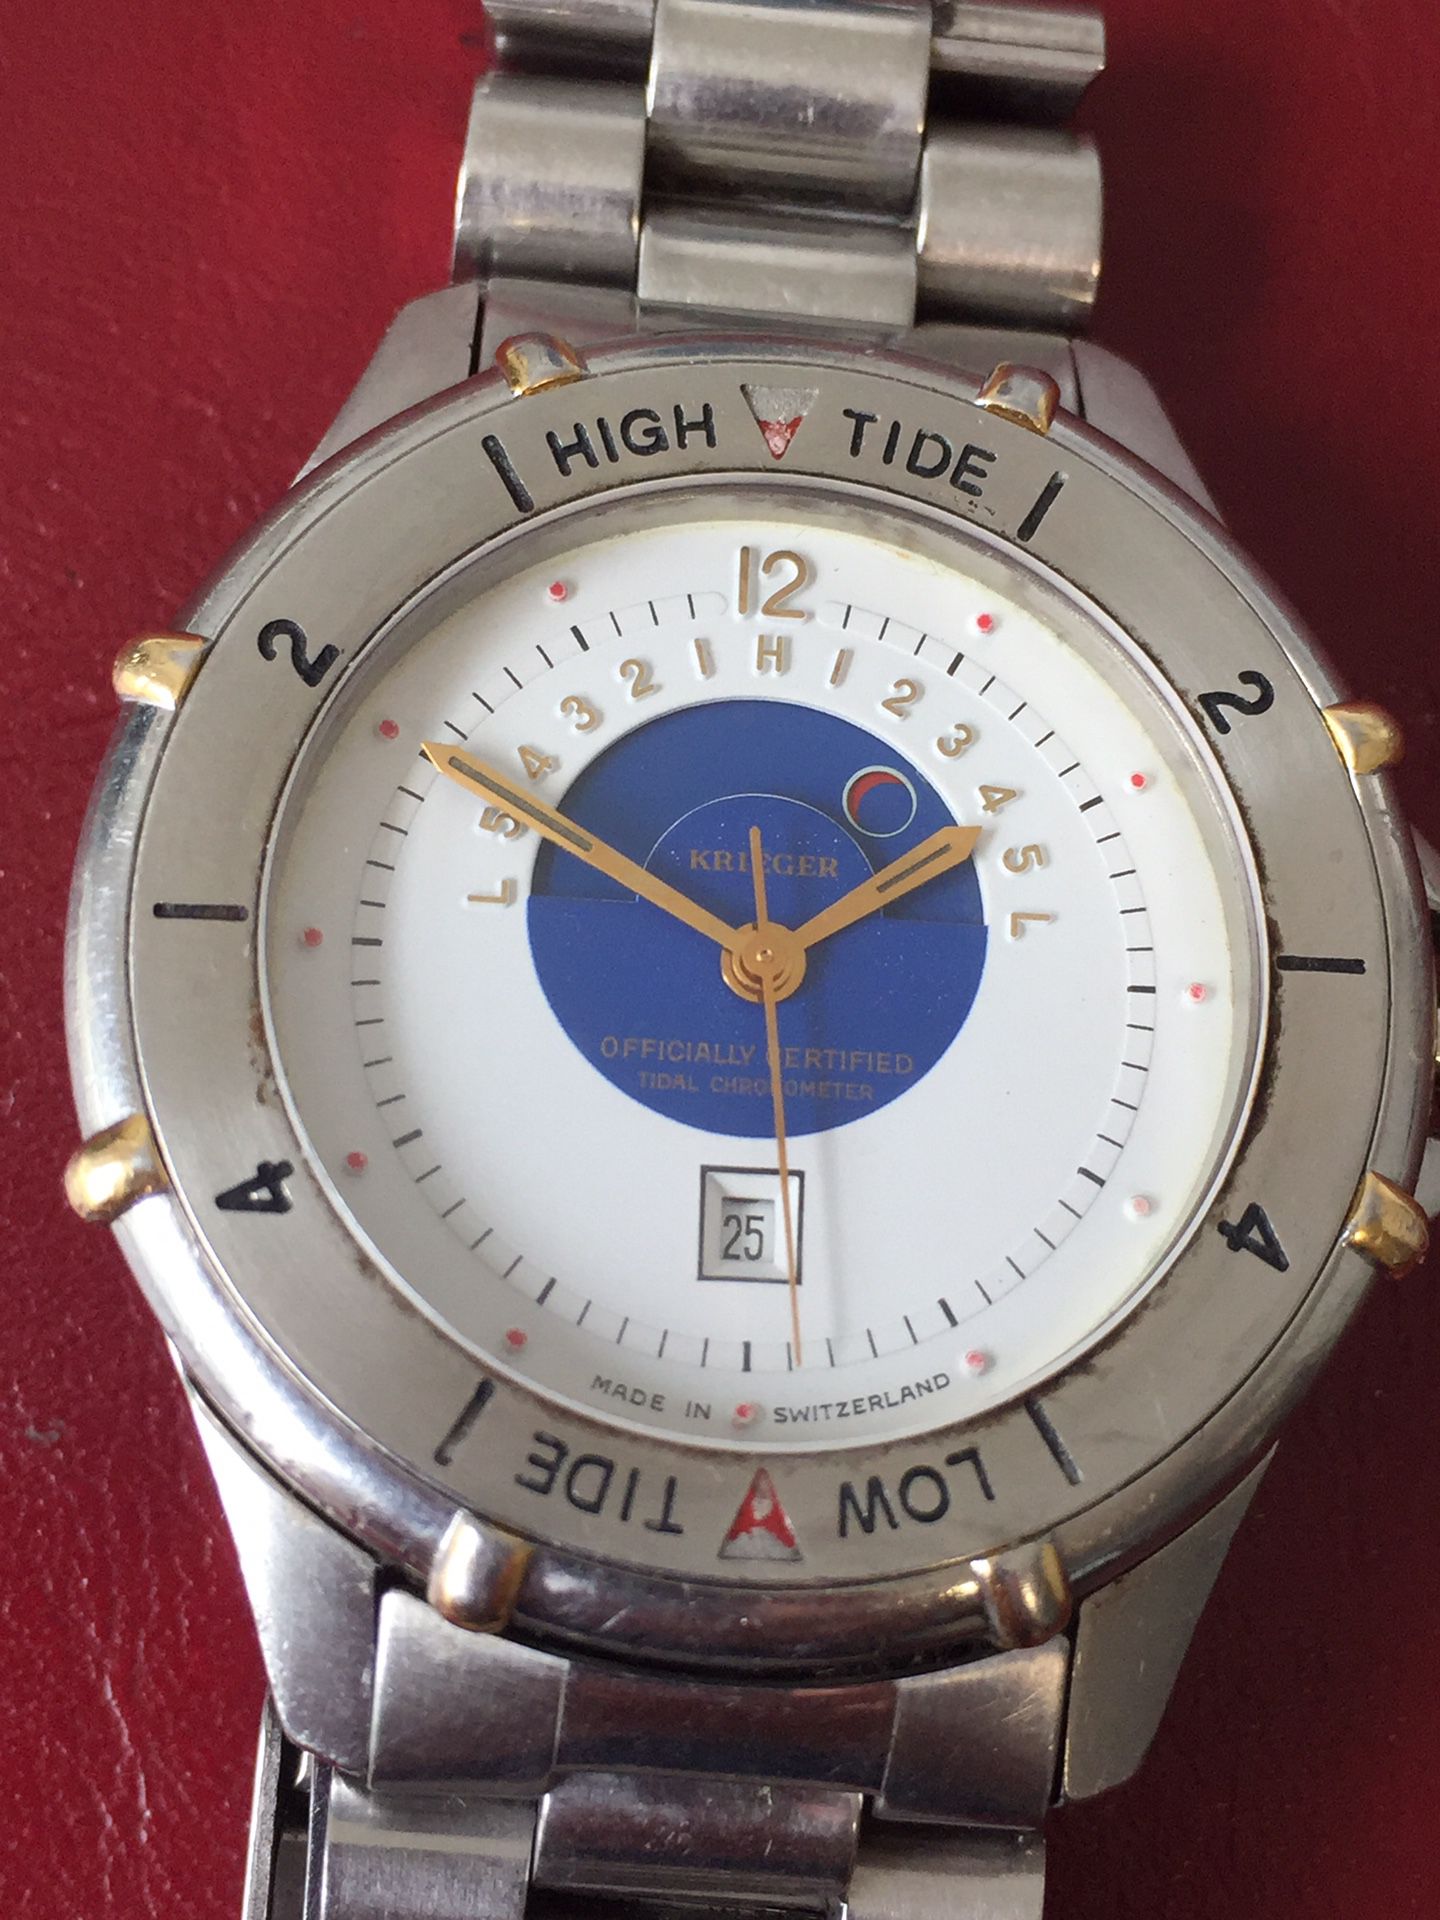 Krieger Officially Certified Tidal Chronometer Wrist Watch + Original Bracelet Running